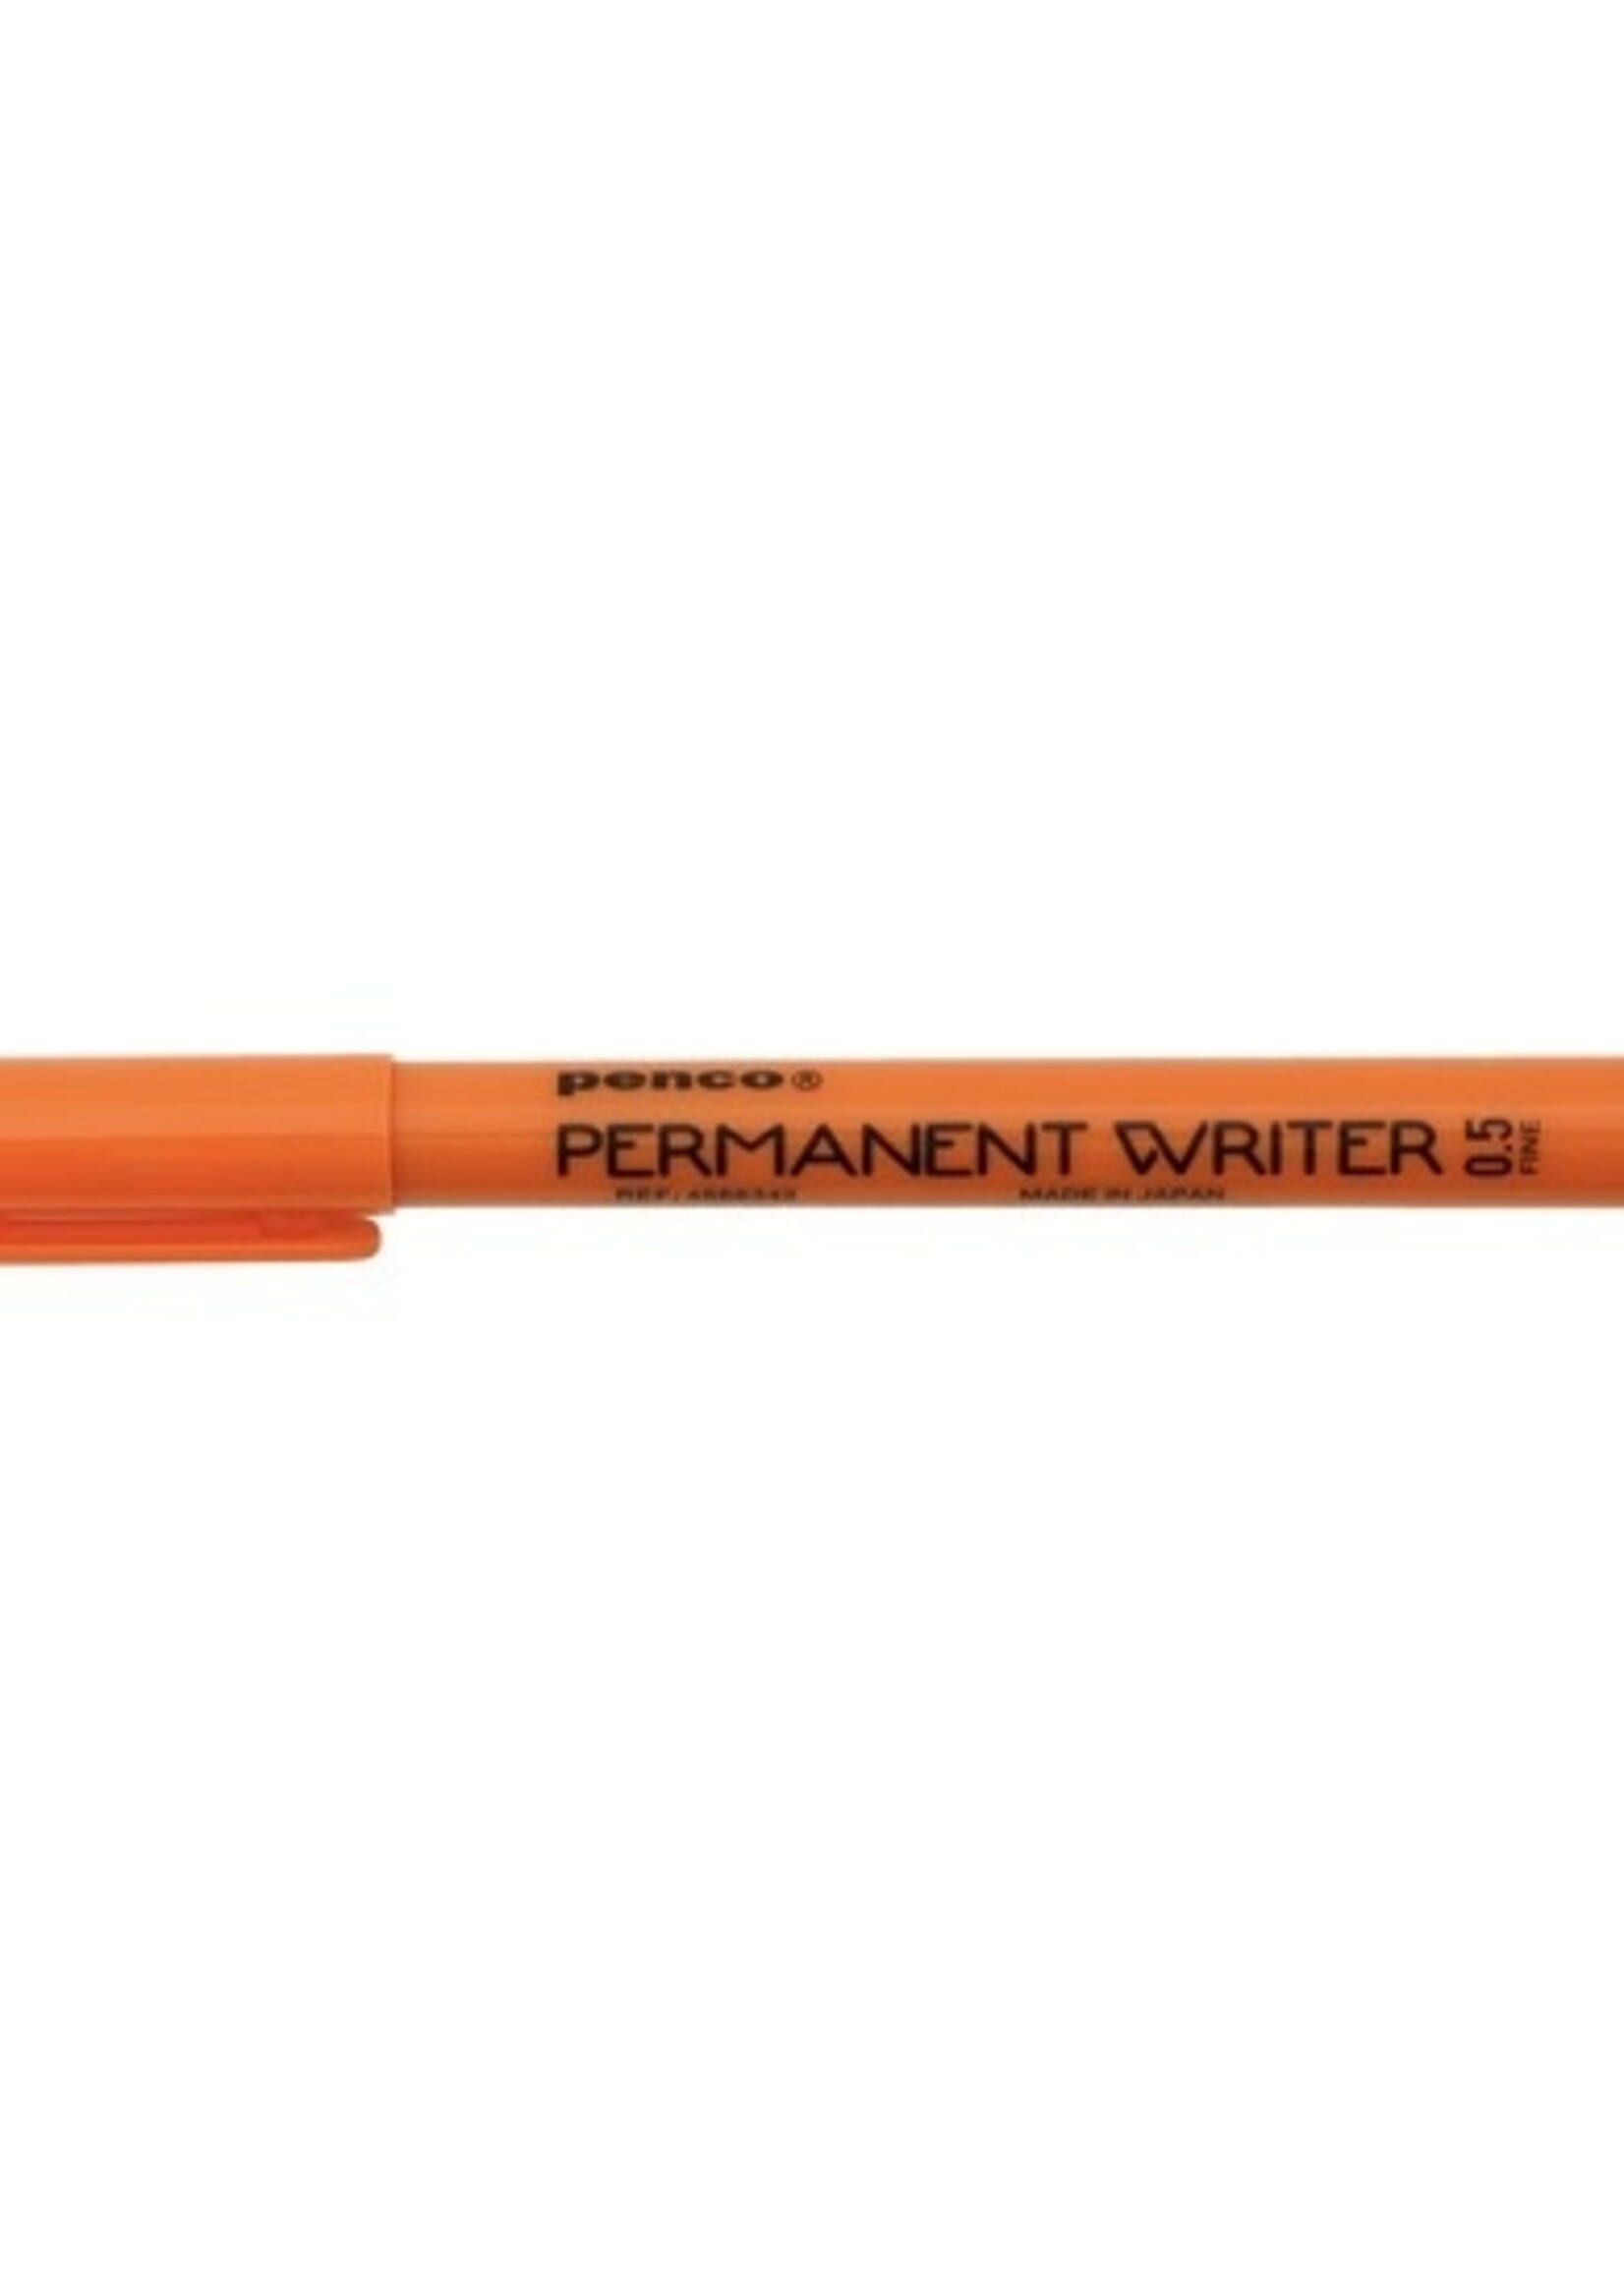 Hightide Pen "Permanent Writer" by HIGHTIDE